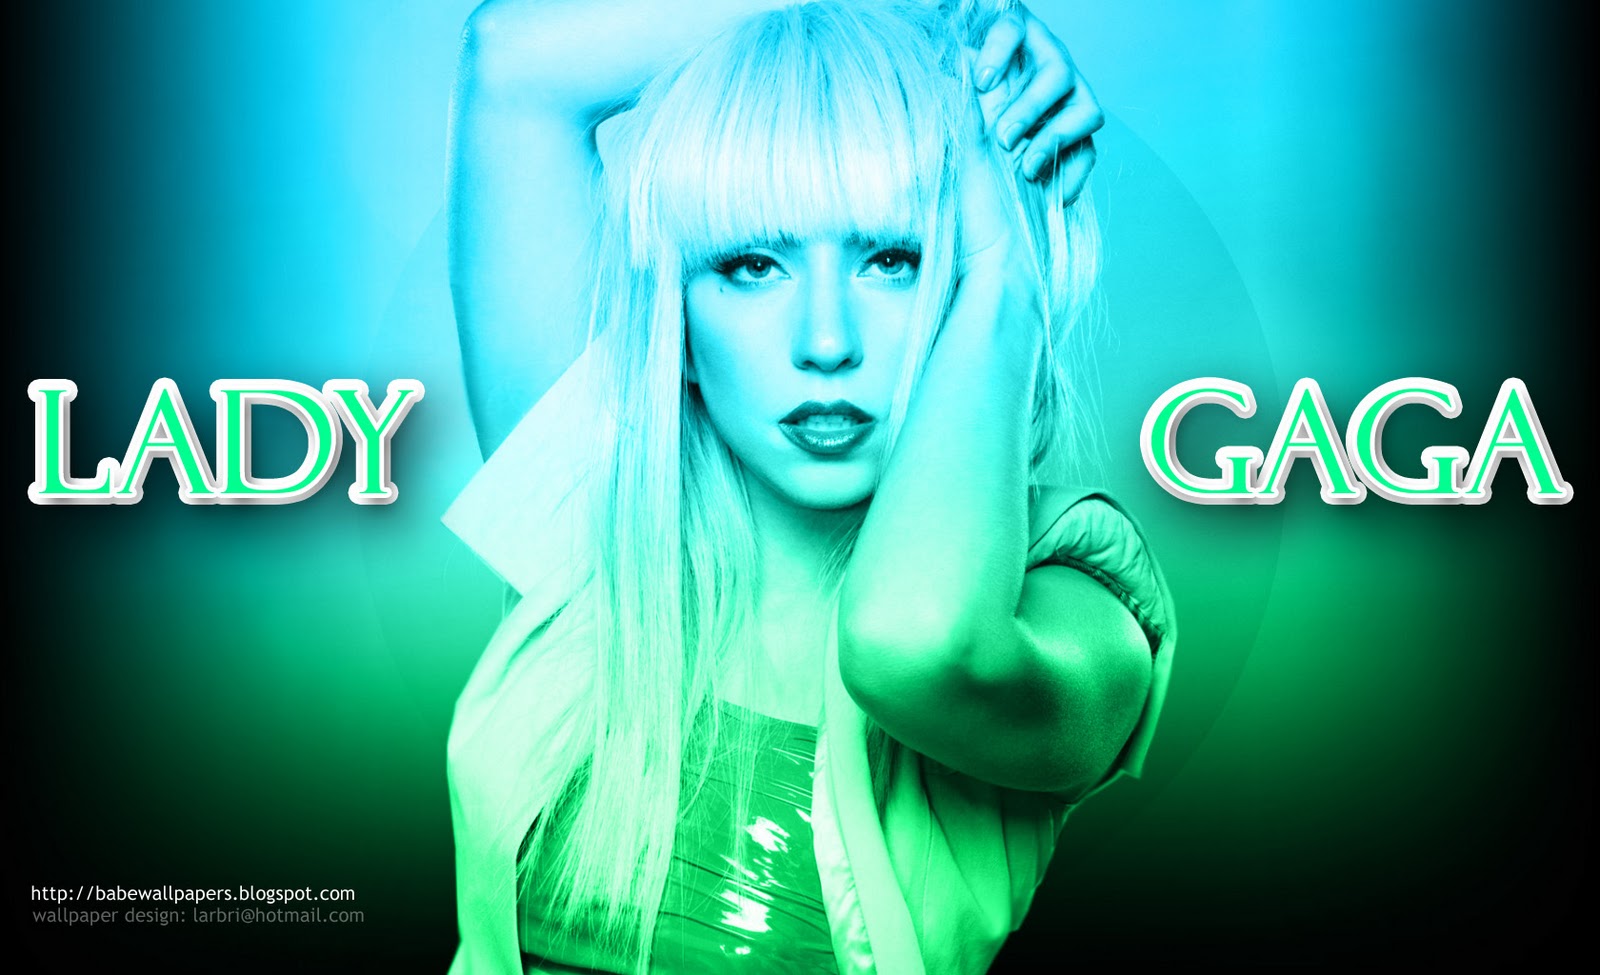 Леди Гага Poker face. Lady Gaga Poker face обои на рабочий стол. Леди Гага Покер фасе. Леди Гага в клипе Покер фейс. Lady gaga dj johnny remix always